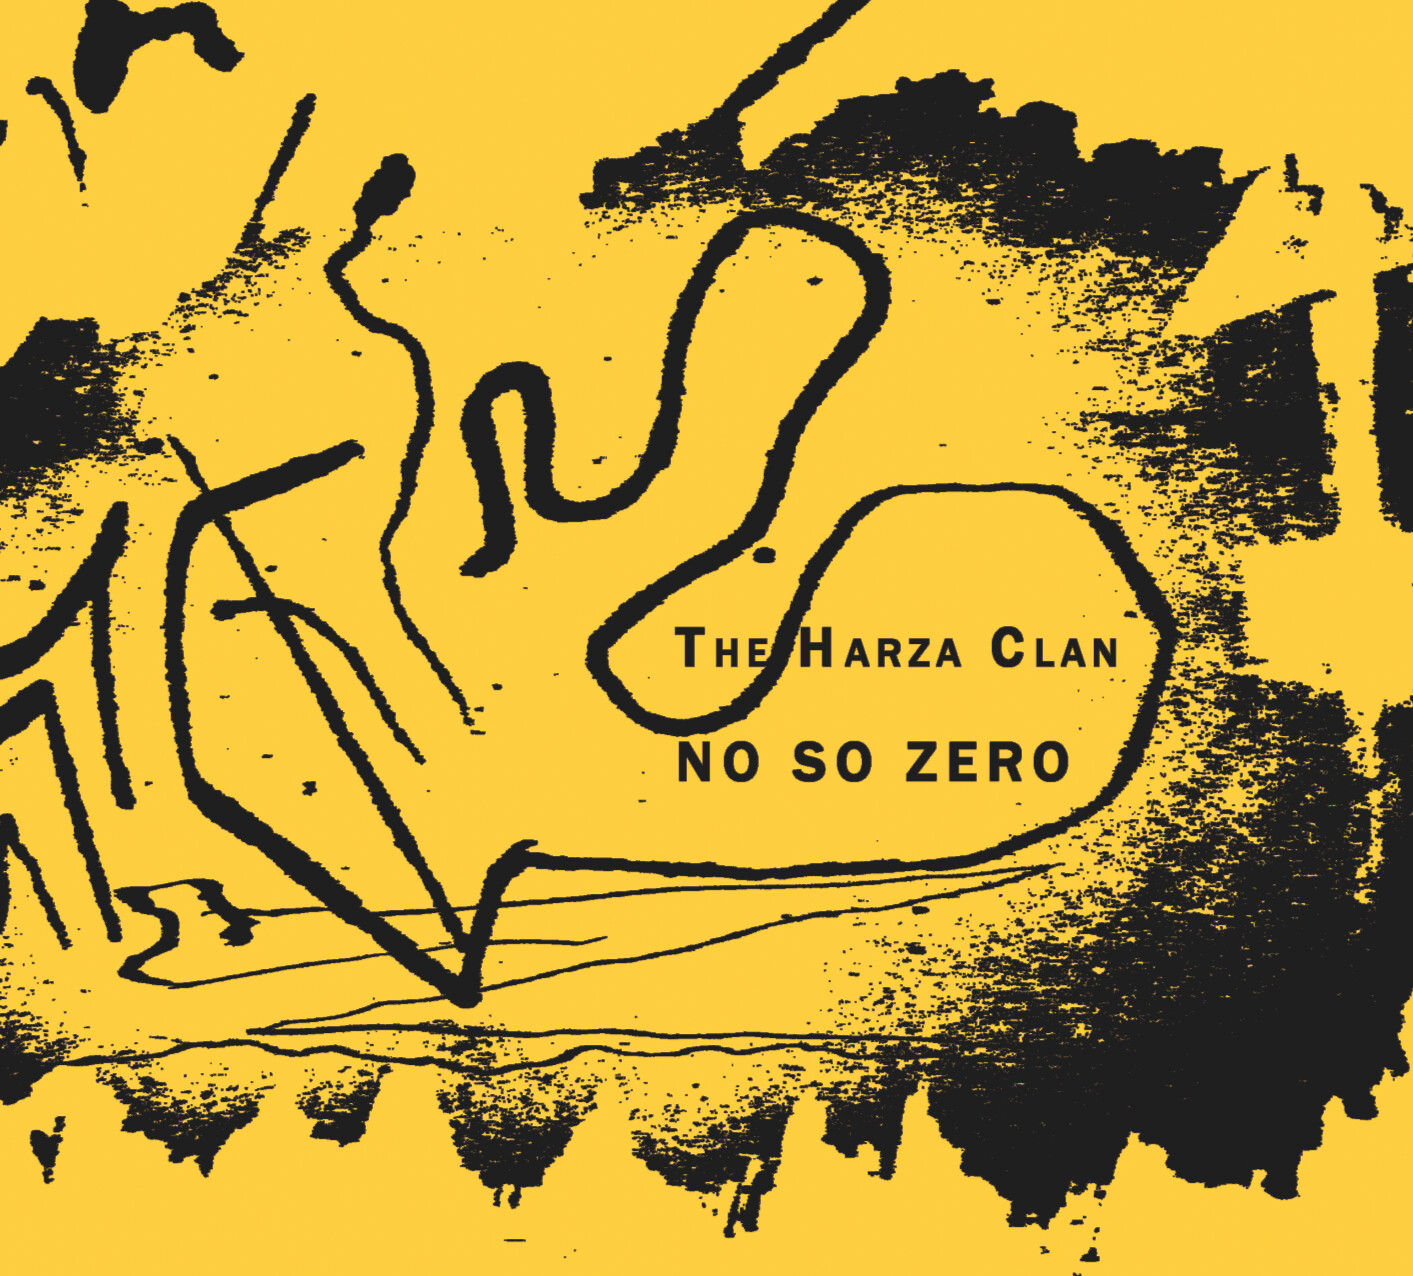 PR-028.2 - The Harza Clan – No So Zero - toxic green vinyl - 7